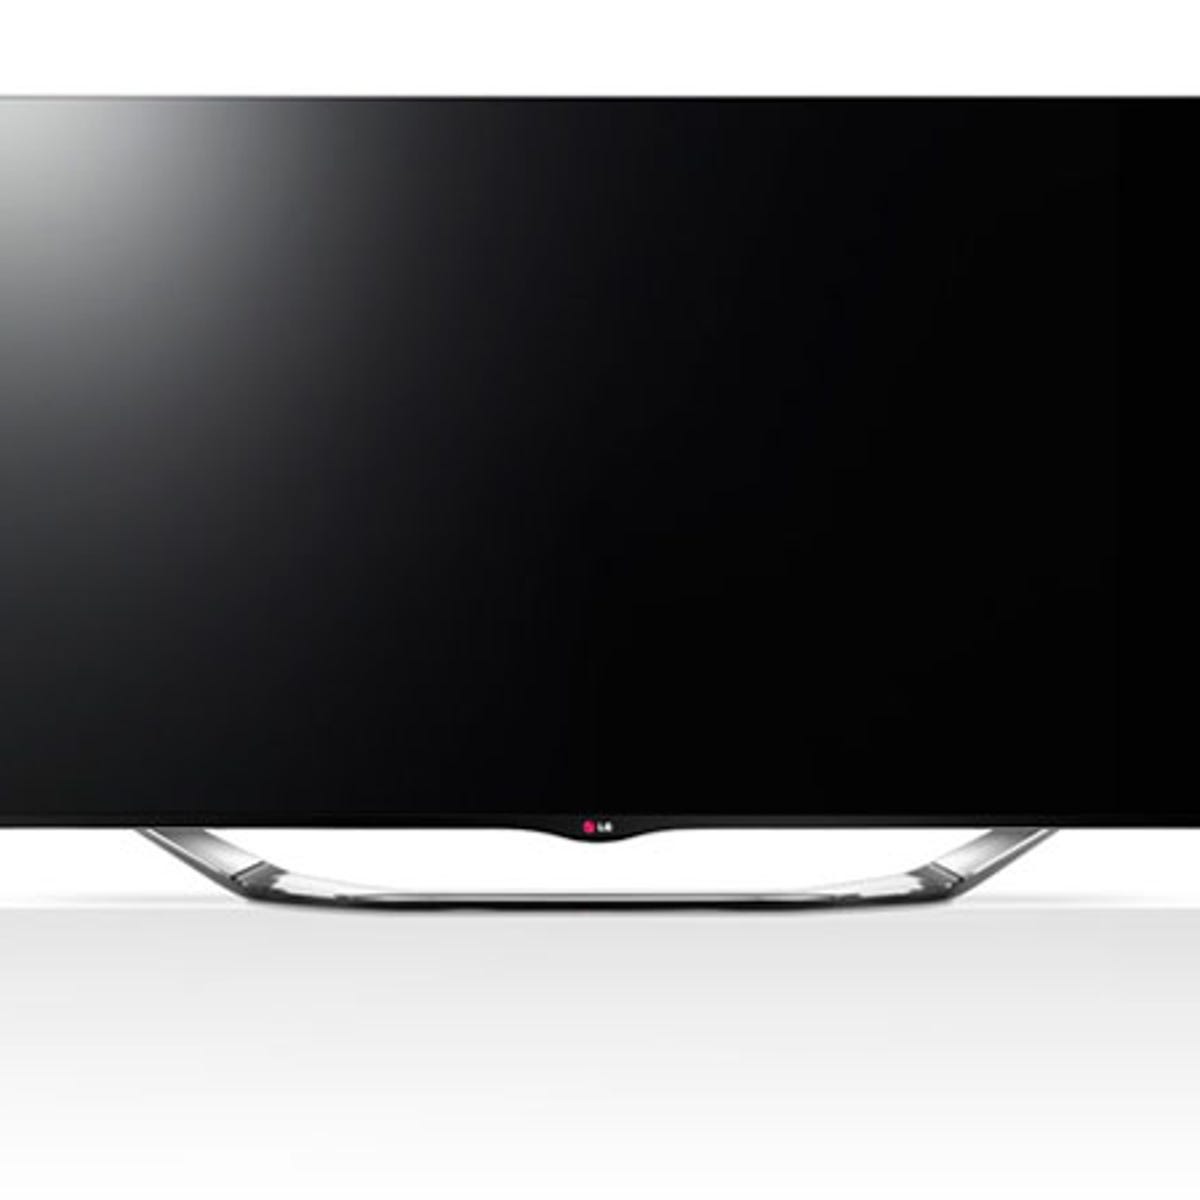 Permanent kort knoglebrud LG LA8600 55-inch smart TV review: LG LA8600 55-inch smart TV - CNET